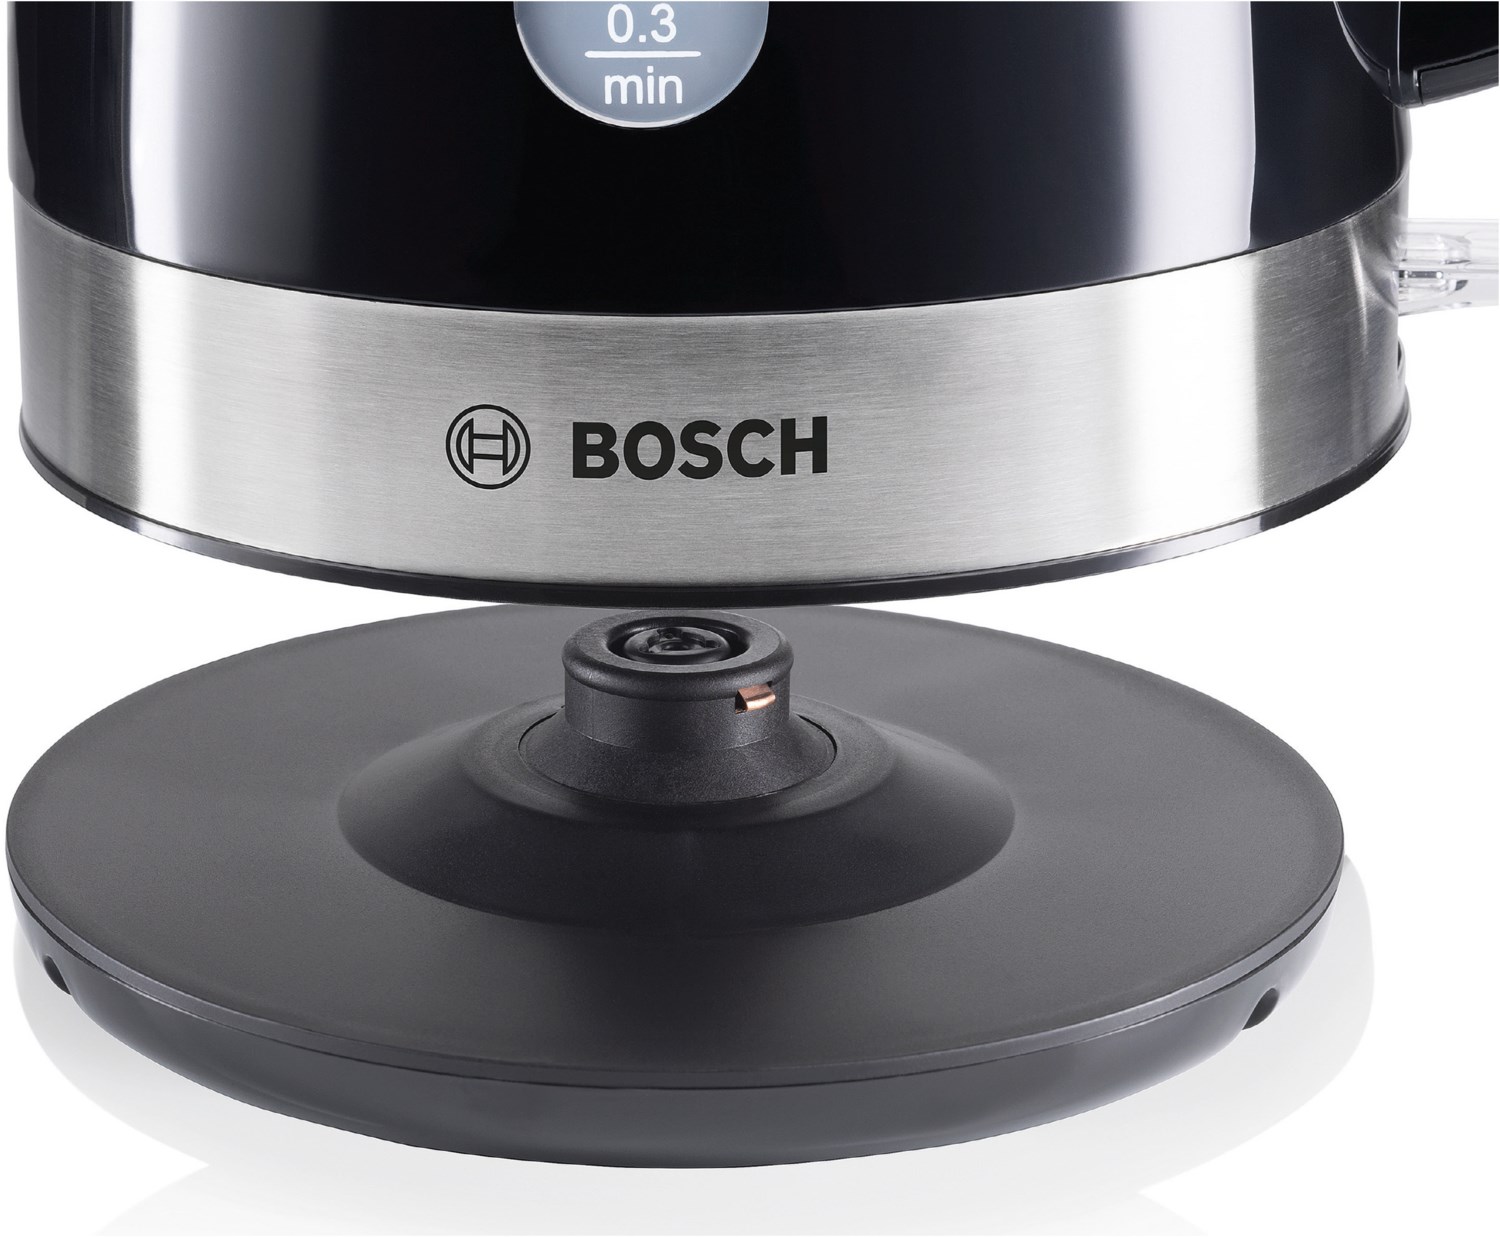 Bosch Wasserkocher 1,7 Liter schwarz/edelstahl